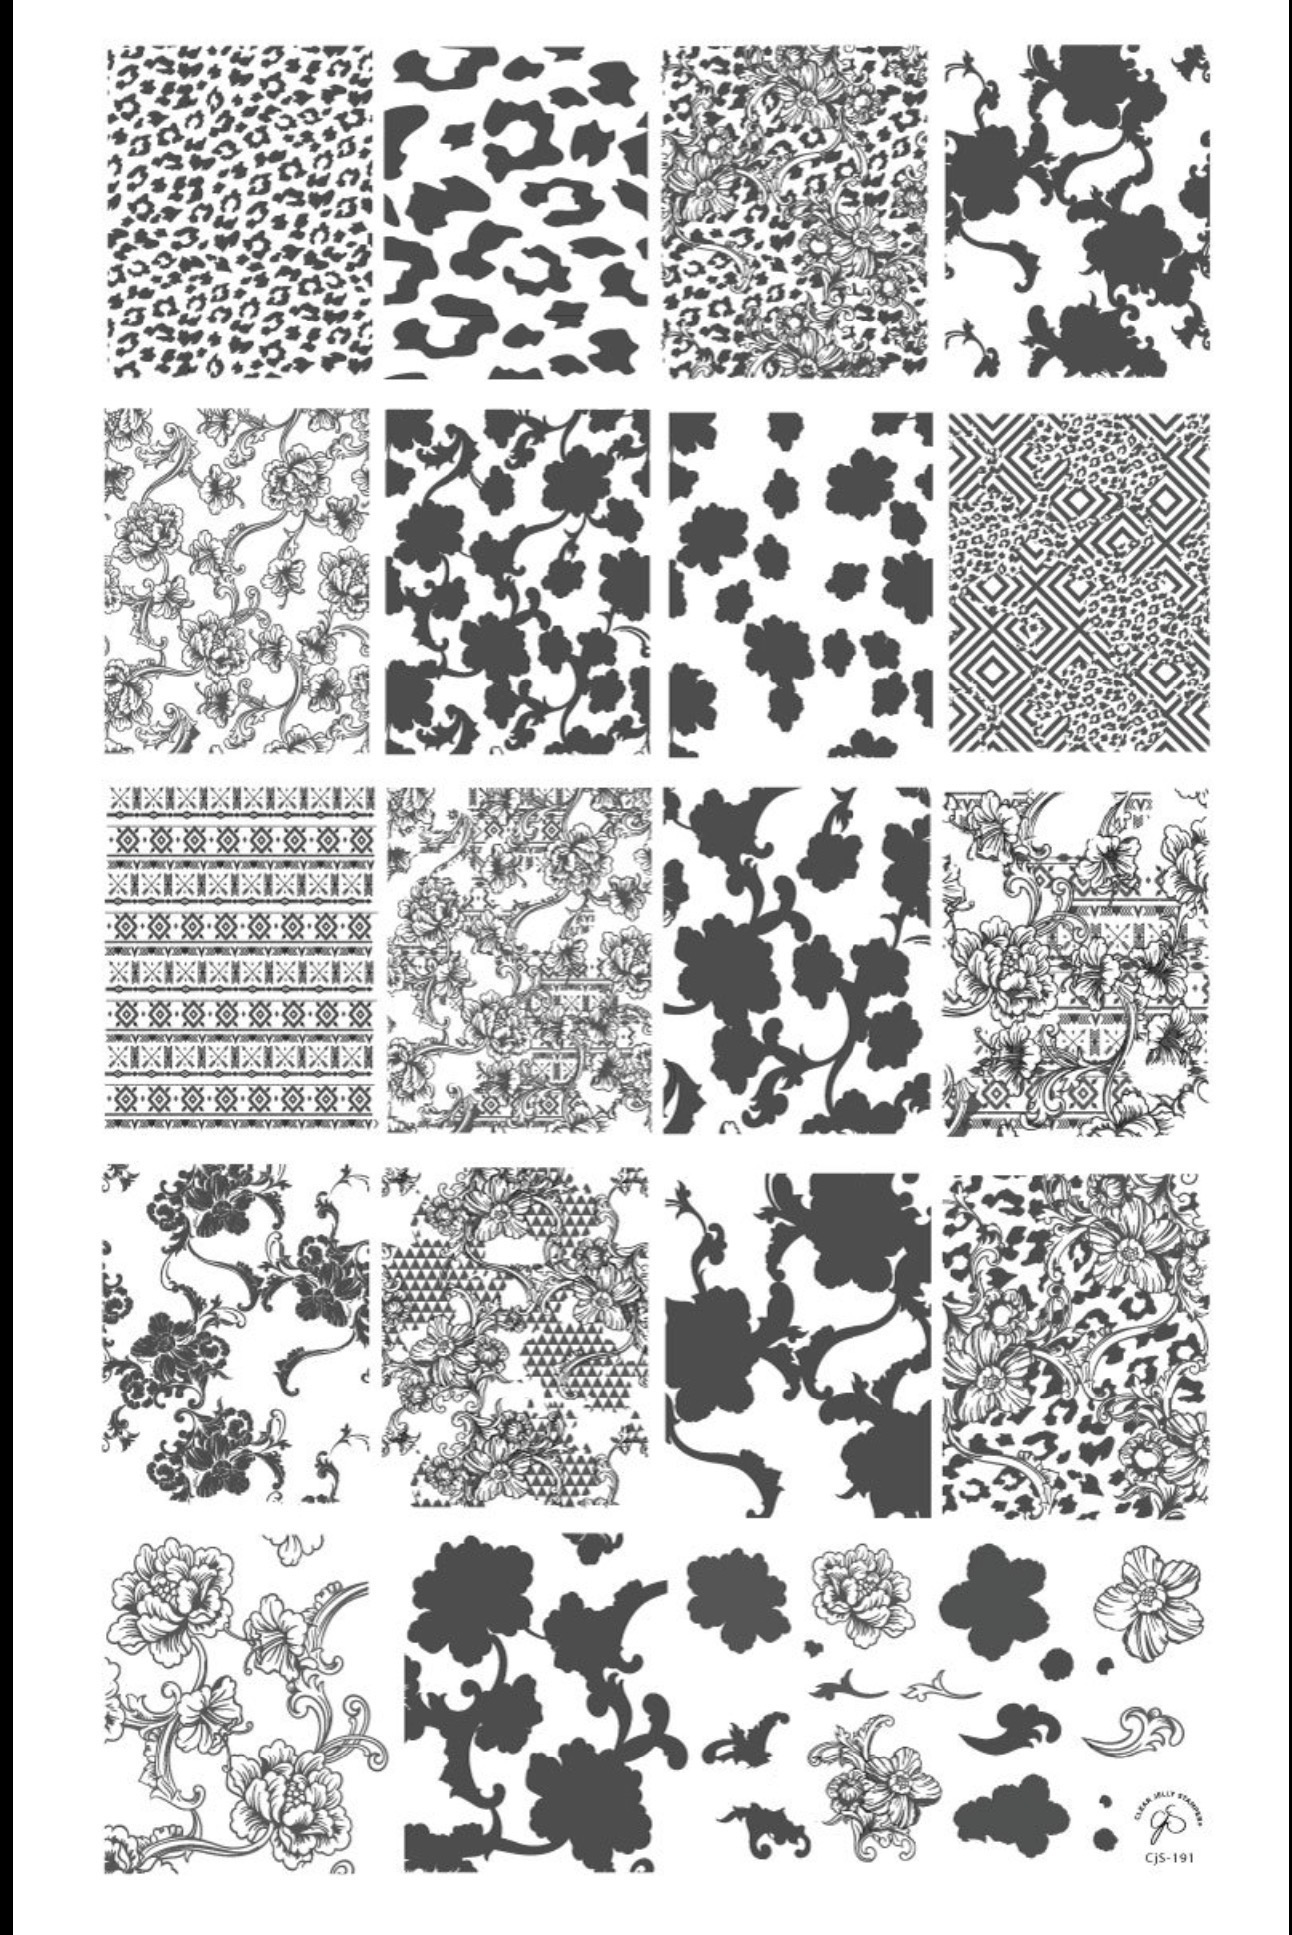 Textiles Séries 3 CJS-191